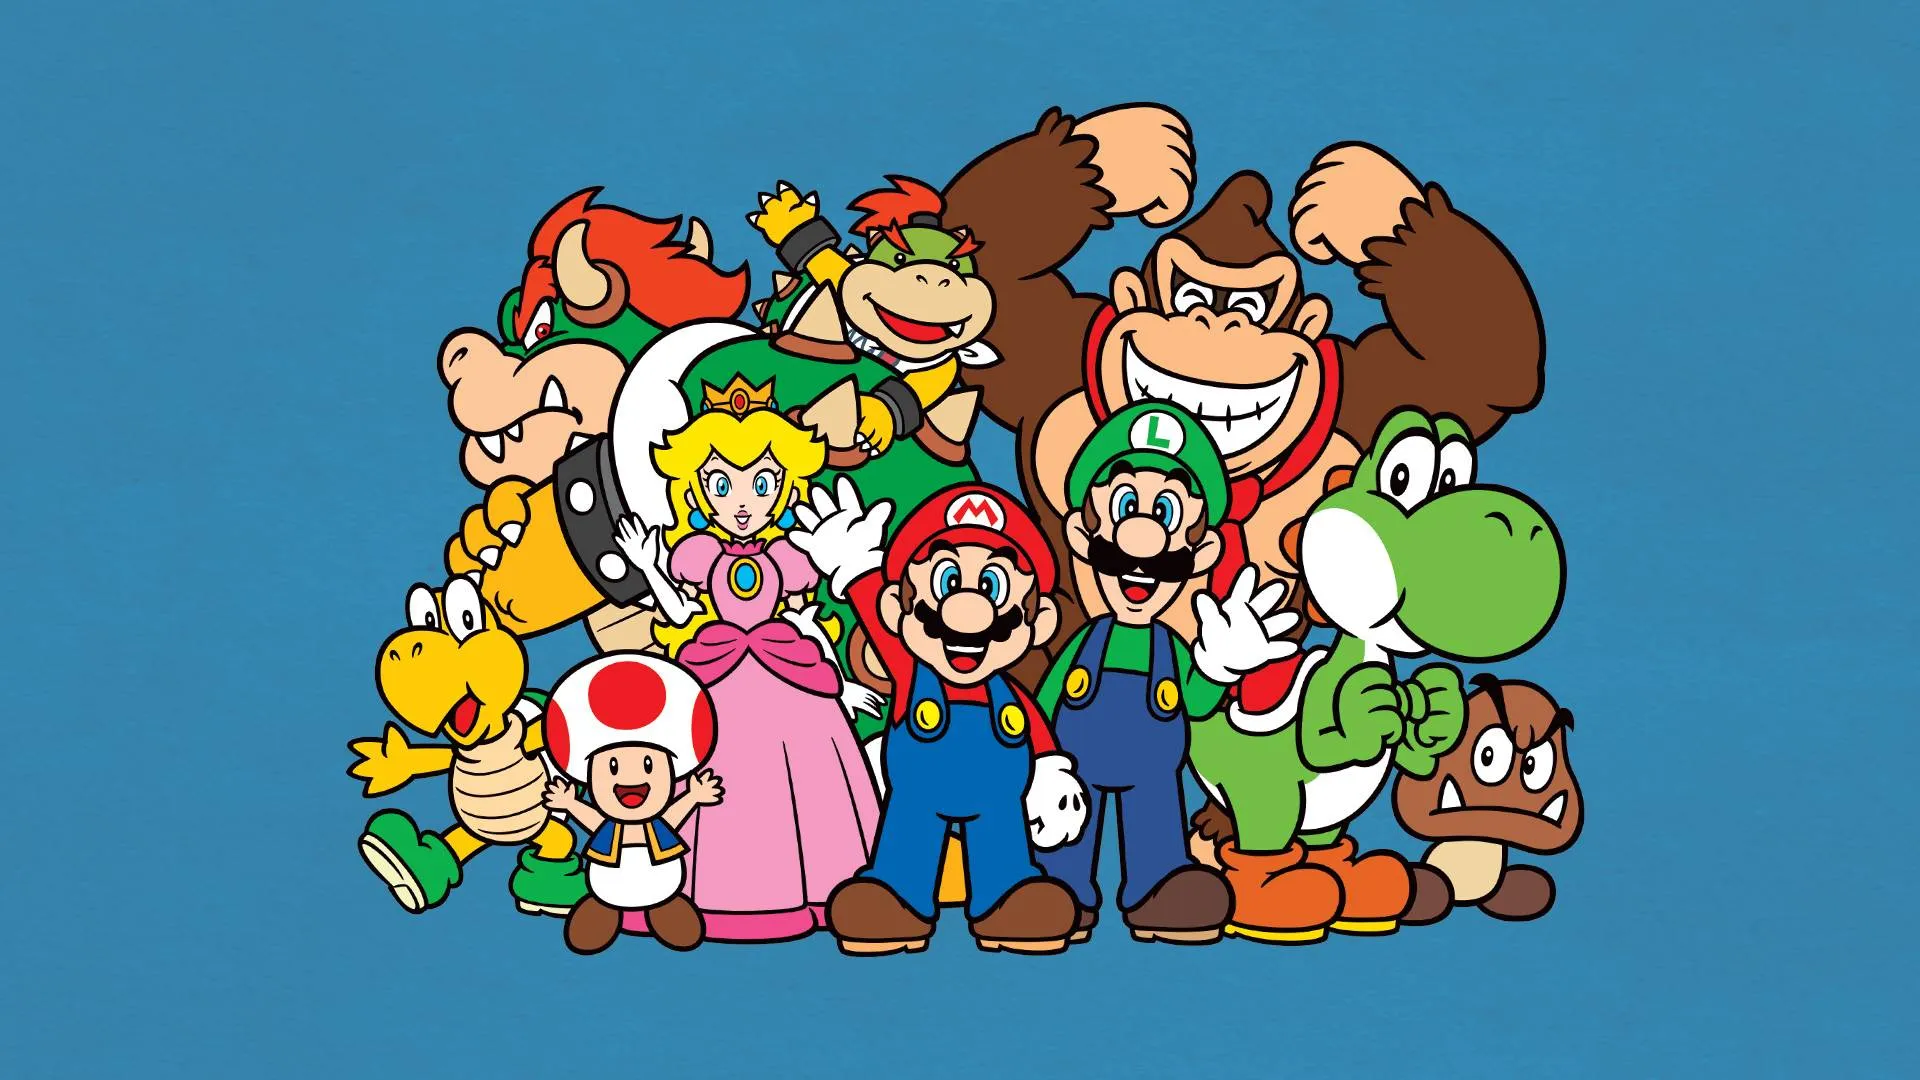 Super Mario Bros Wii #10 - Não fui Enganado!? 